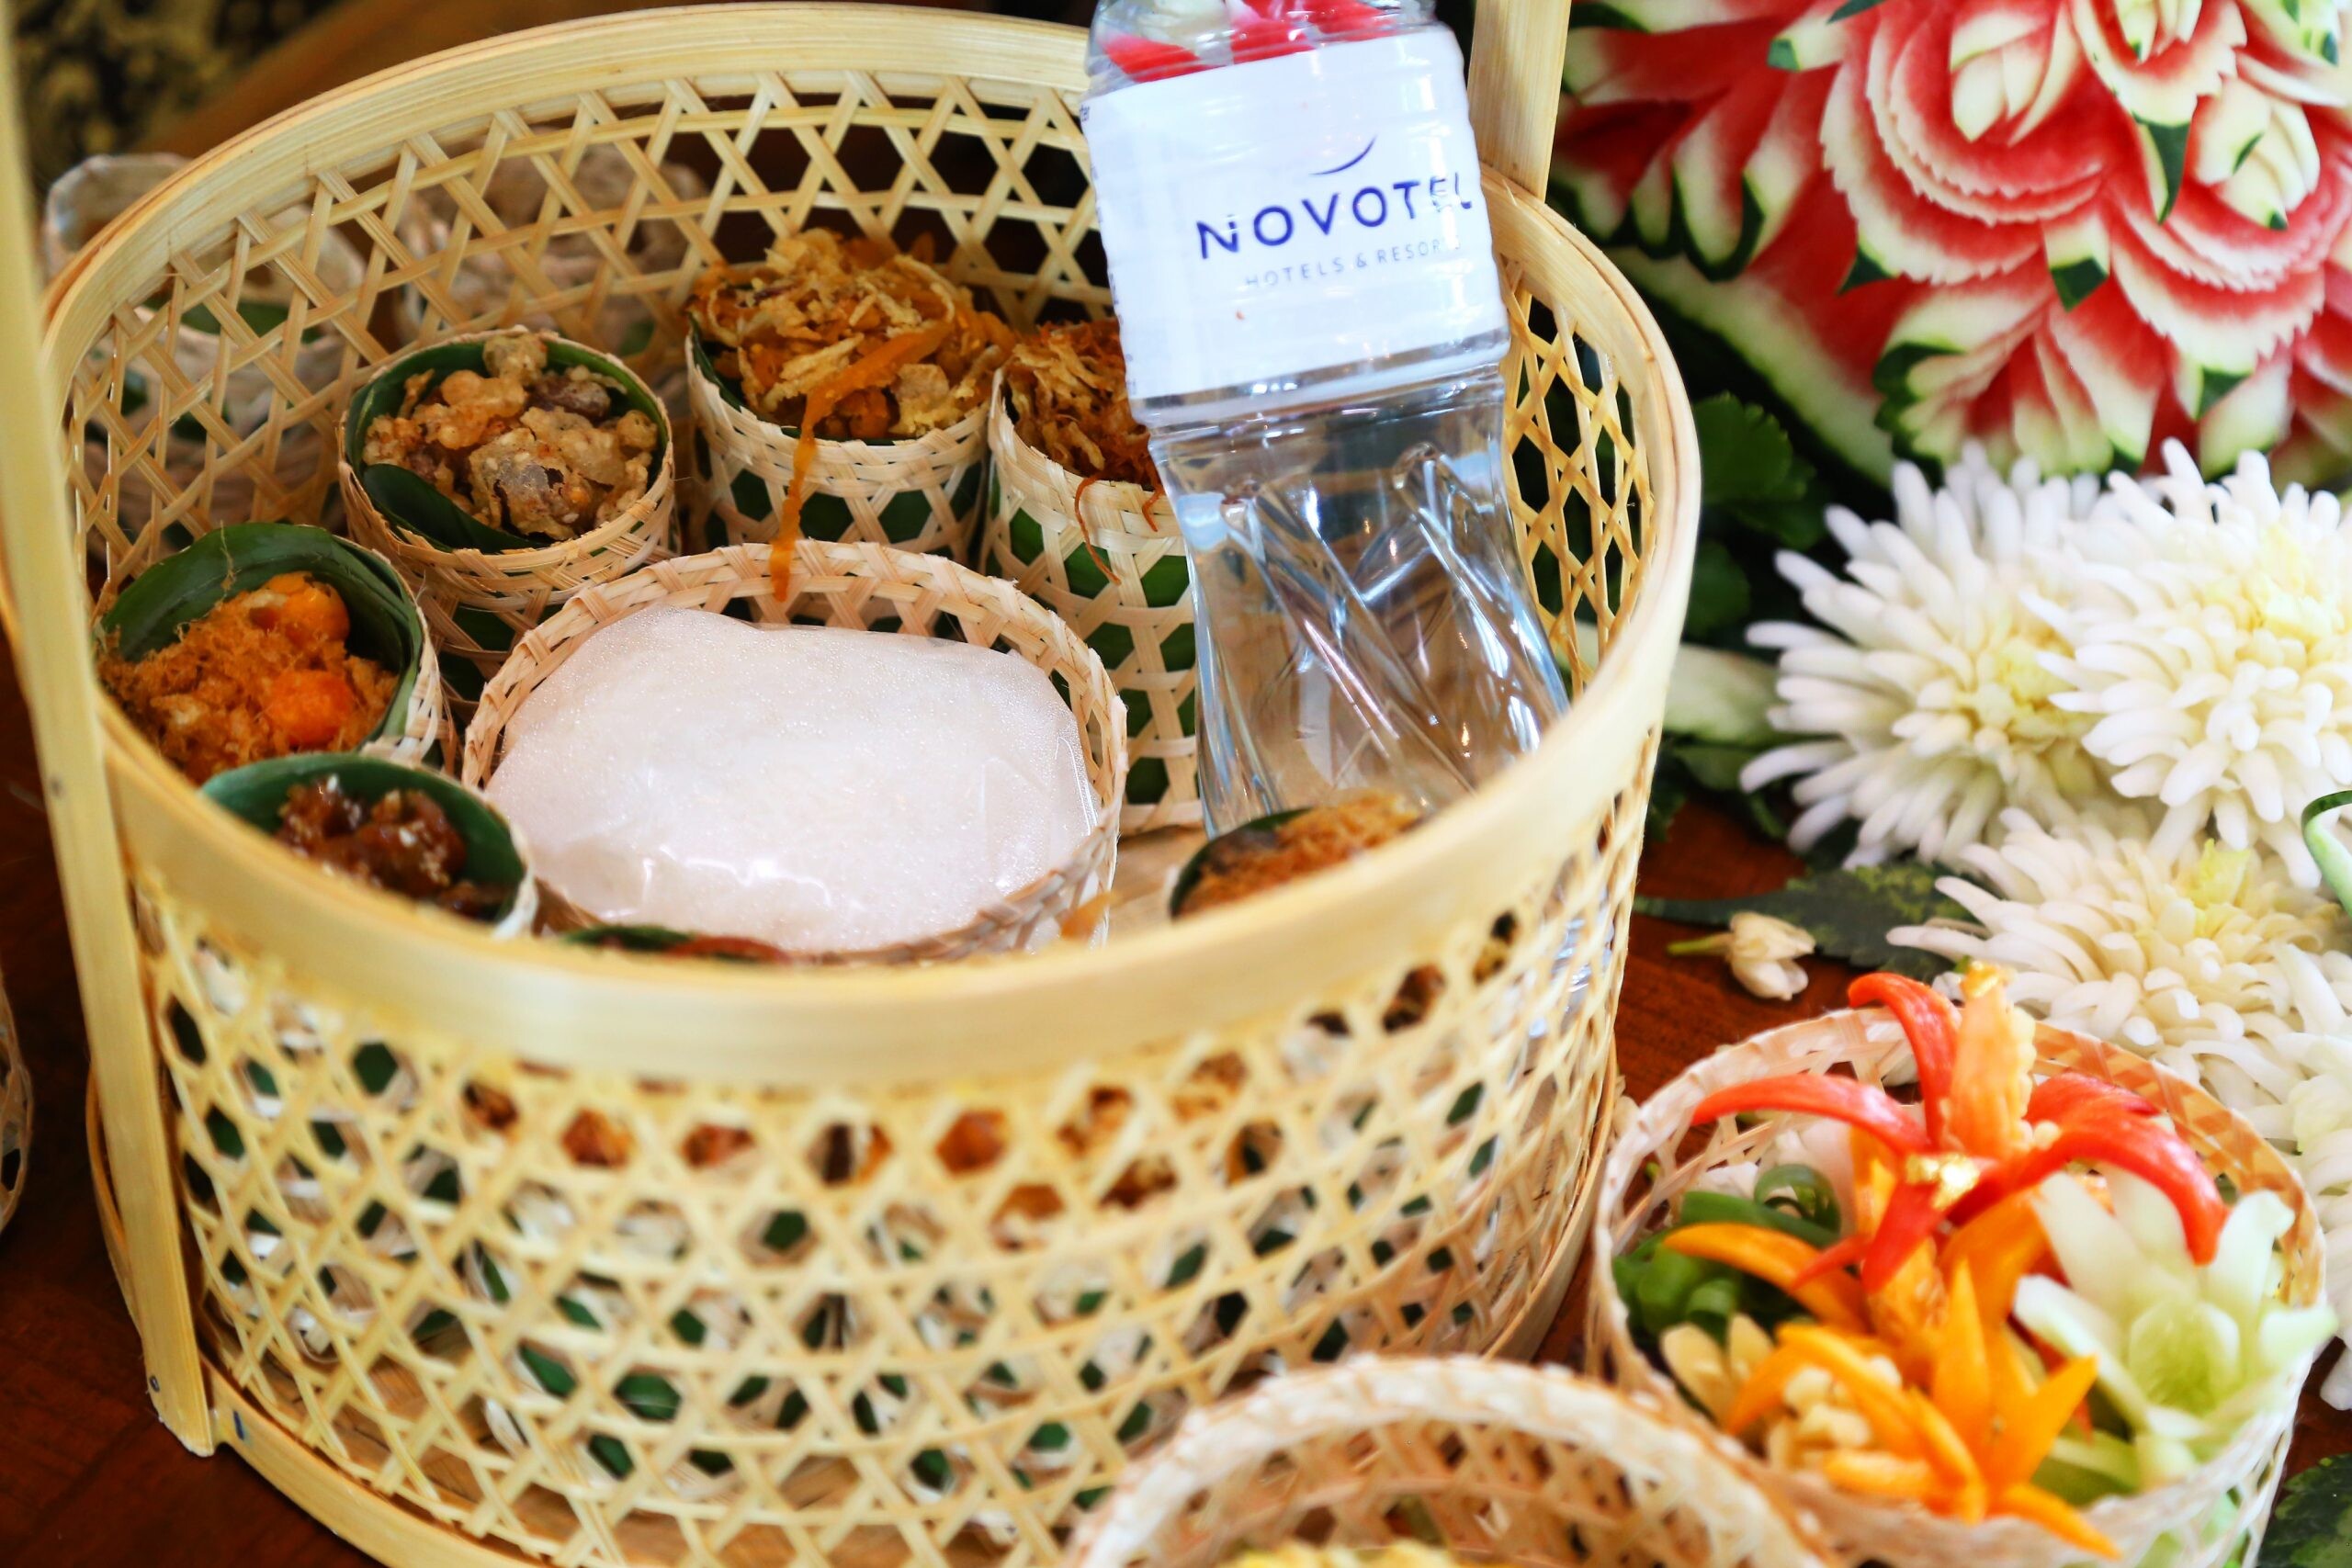 "ข้าวแช่สุวรรณภูมิ" สำรับเอกแห่งฤดูร้อน ที่ห้องอาหารศาลาไทย โรงแรมโนโวเทล สุวรรณภูมิ แอร์พอร์ต